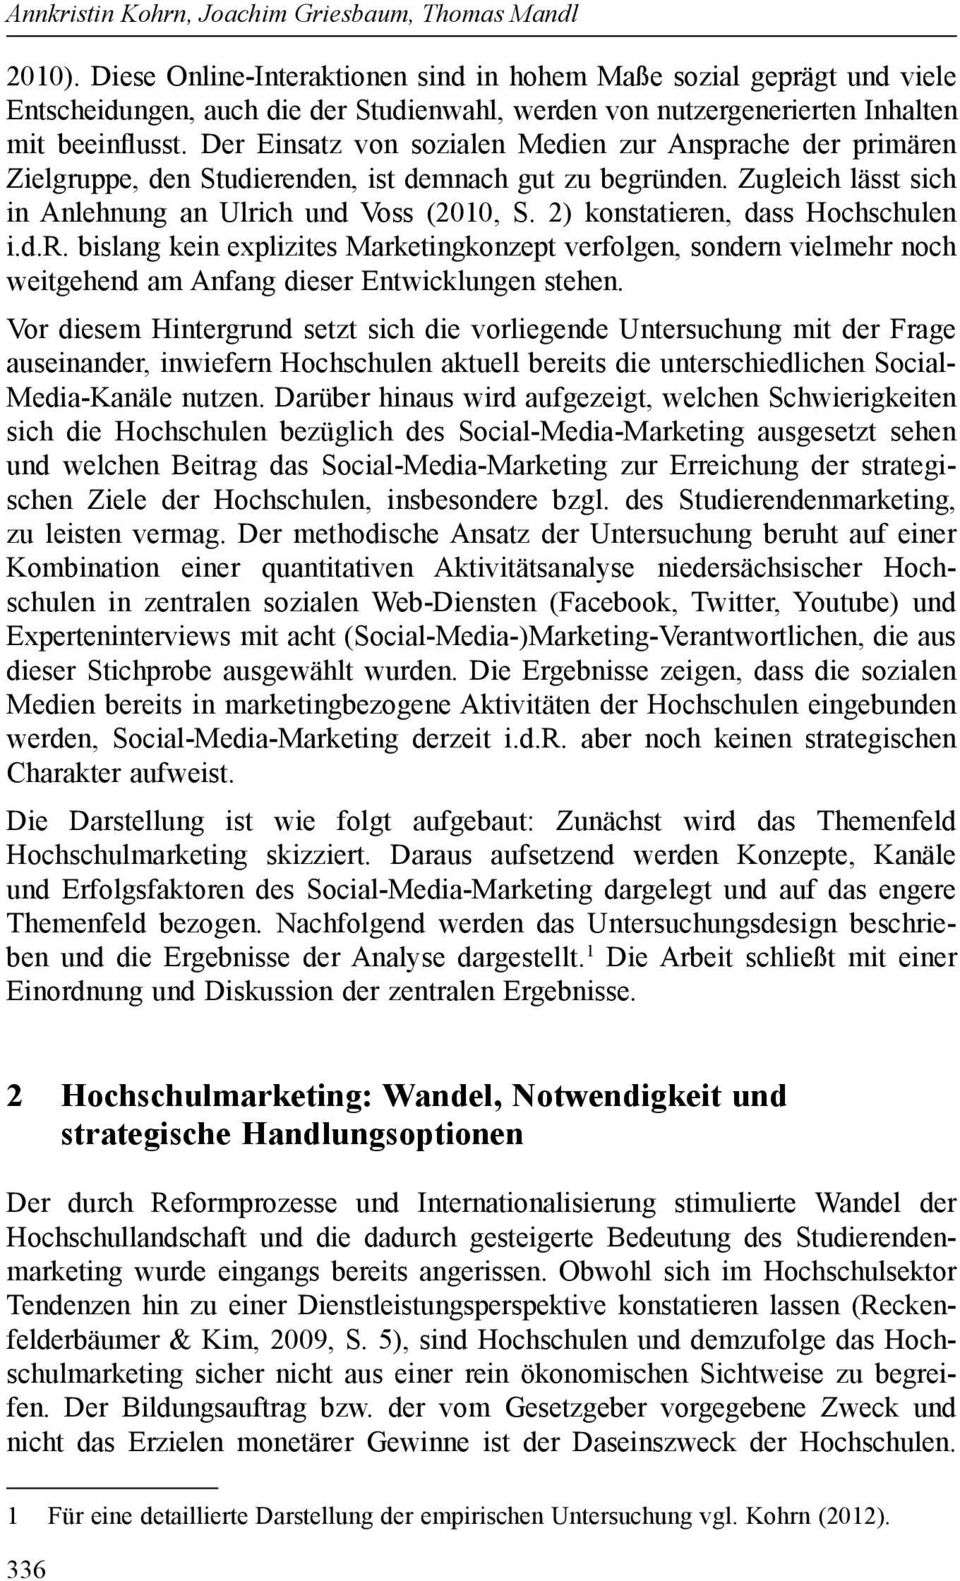 Der Einsatz von sozialen Medien zur Ansprache der primären Zielgruppe, den Studierenden, ist demnach gut zu begründen. Zugleich lässt sich in Anlehnung an Ulrich und Voss (2010, S.